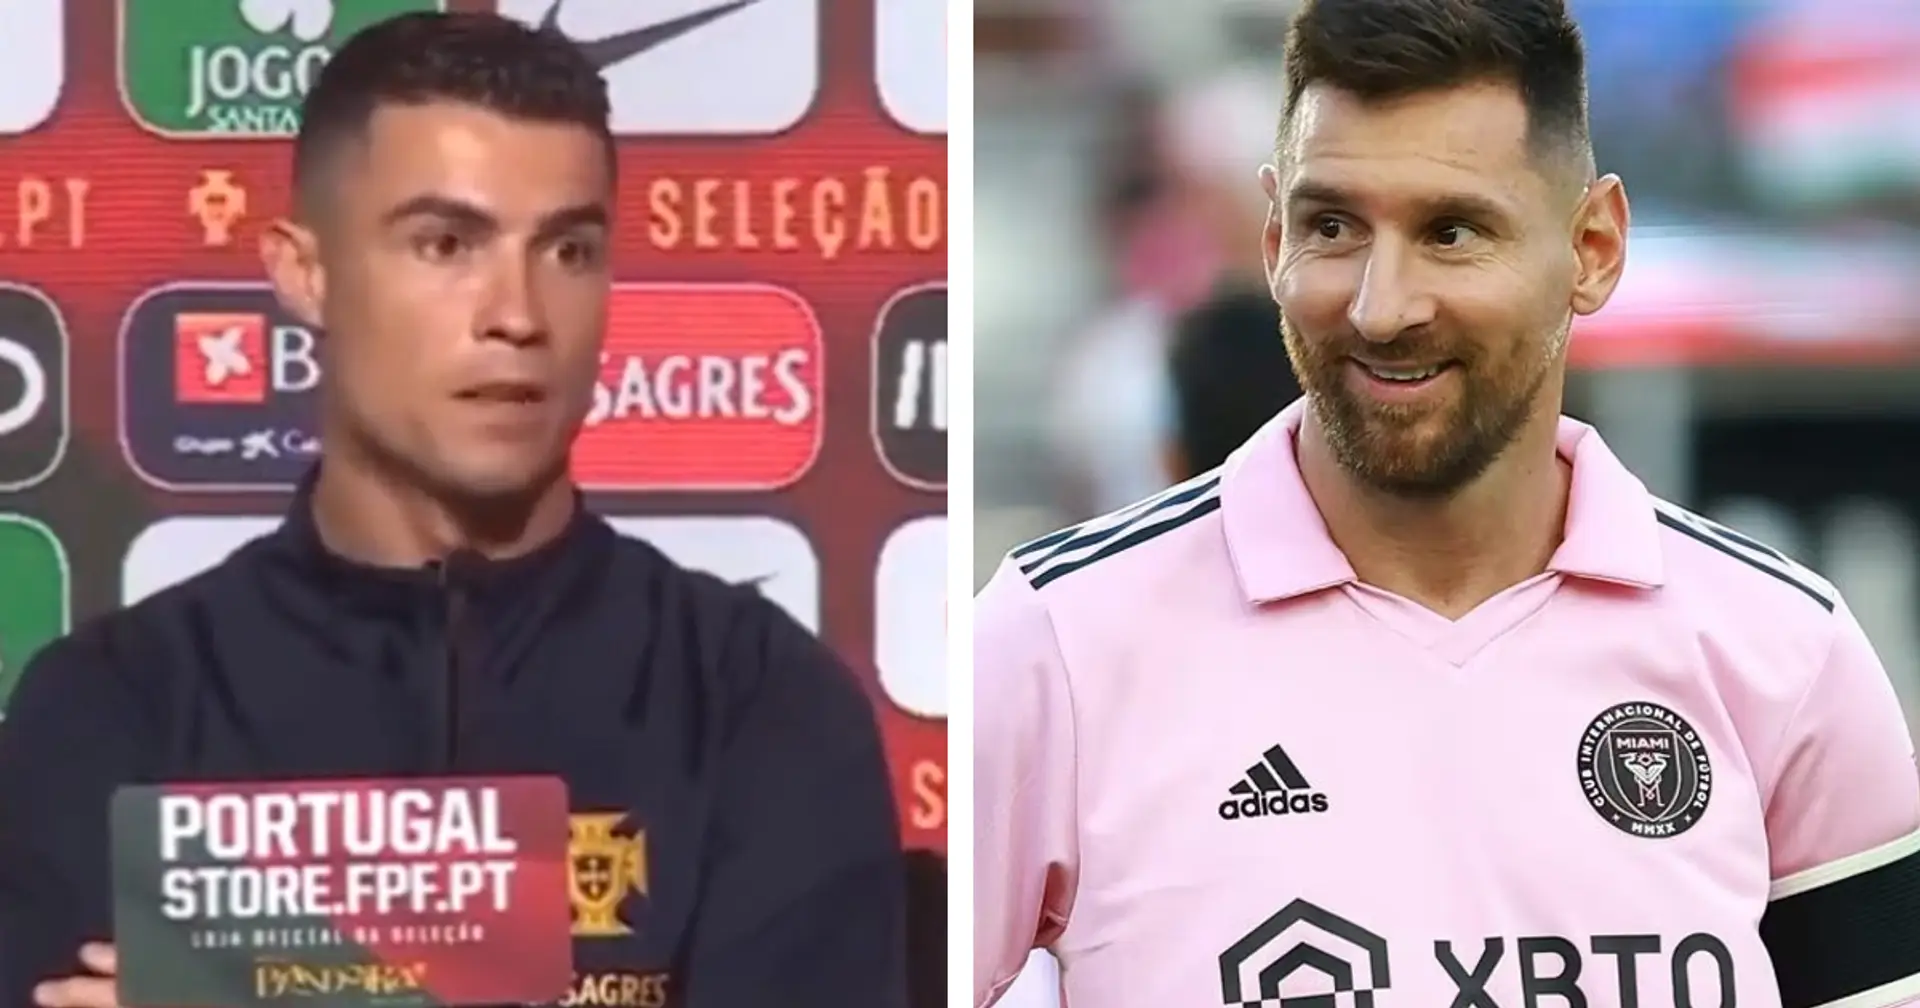 "La rivalità è finita": CR7 torna a parlare di Messi, e lancia un appello ai fan di entrambe le parti